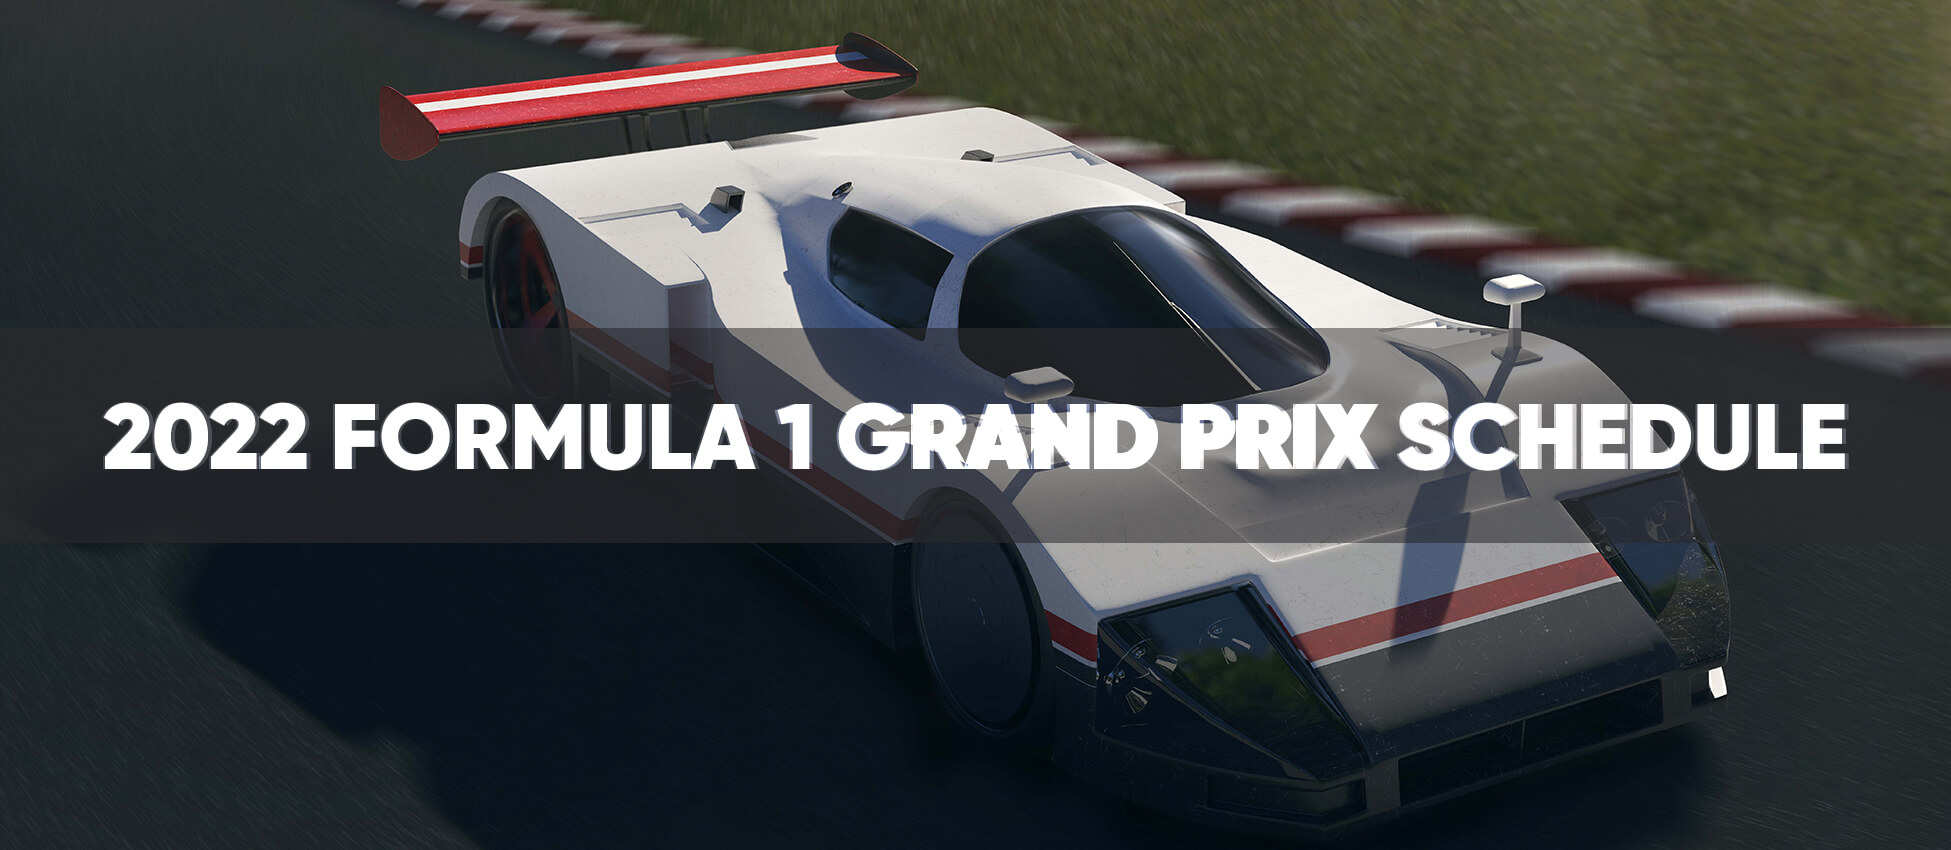 Formula 1 Grand Prix Schedule